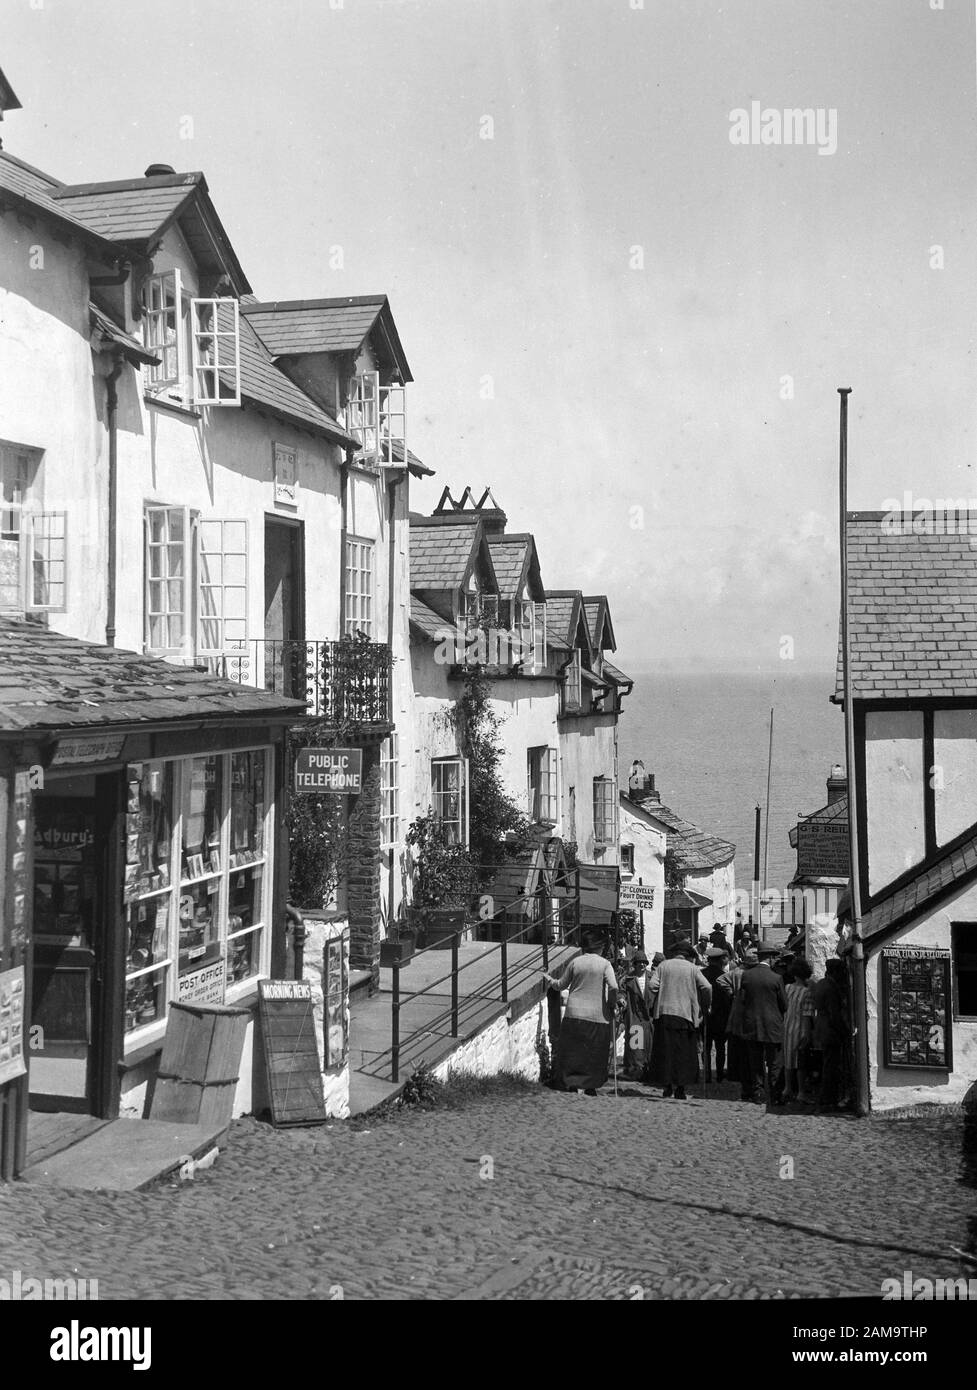 Archive image vers les années 1920 de Clovelly High Street, Devon, Royaume-Uni. Numérisé à partir du négatif d'origine Banque D'Images